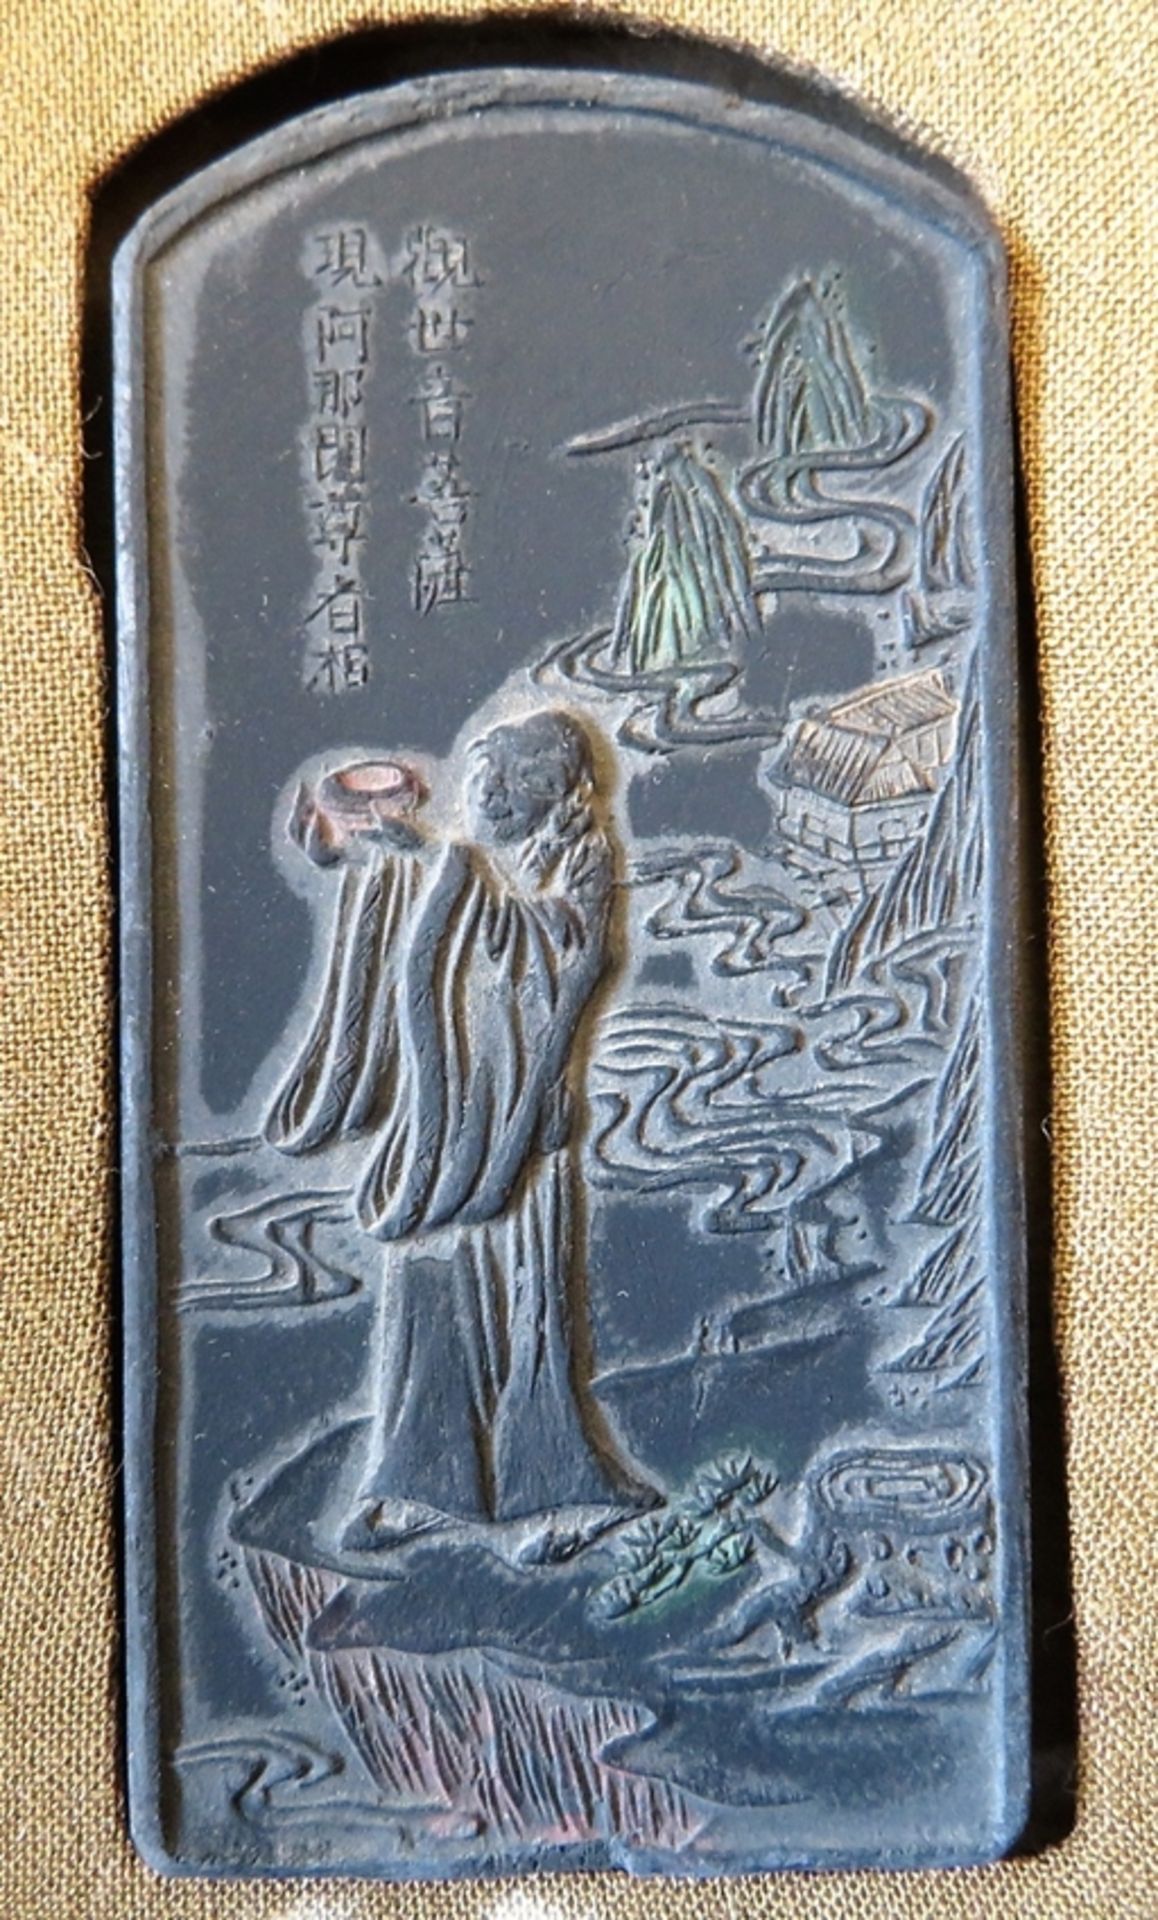 Kassette mit 10 Siegeln, China, um 1900, Ton mit Reliefdarstellungen, ca. 11 x 4 x 1,1 cm. - Bild 2 aus 2